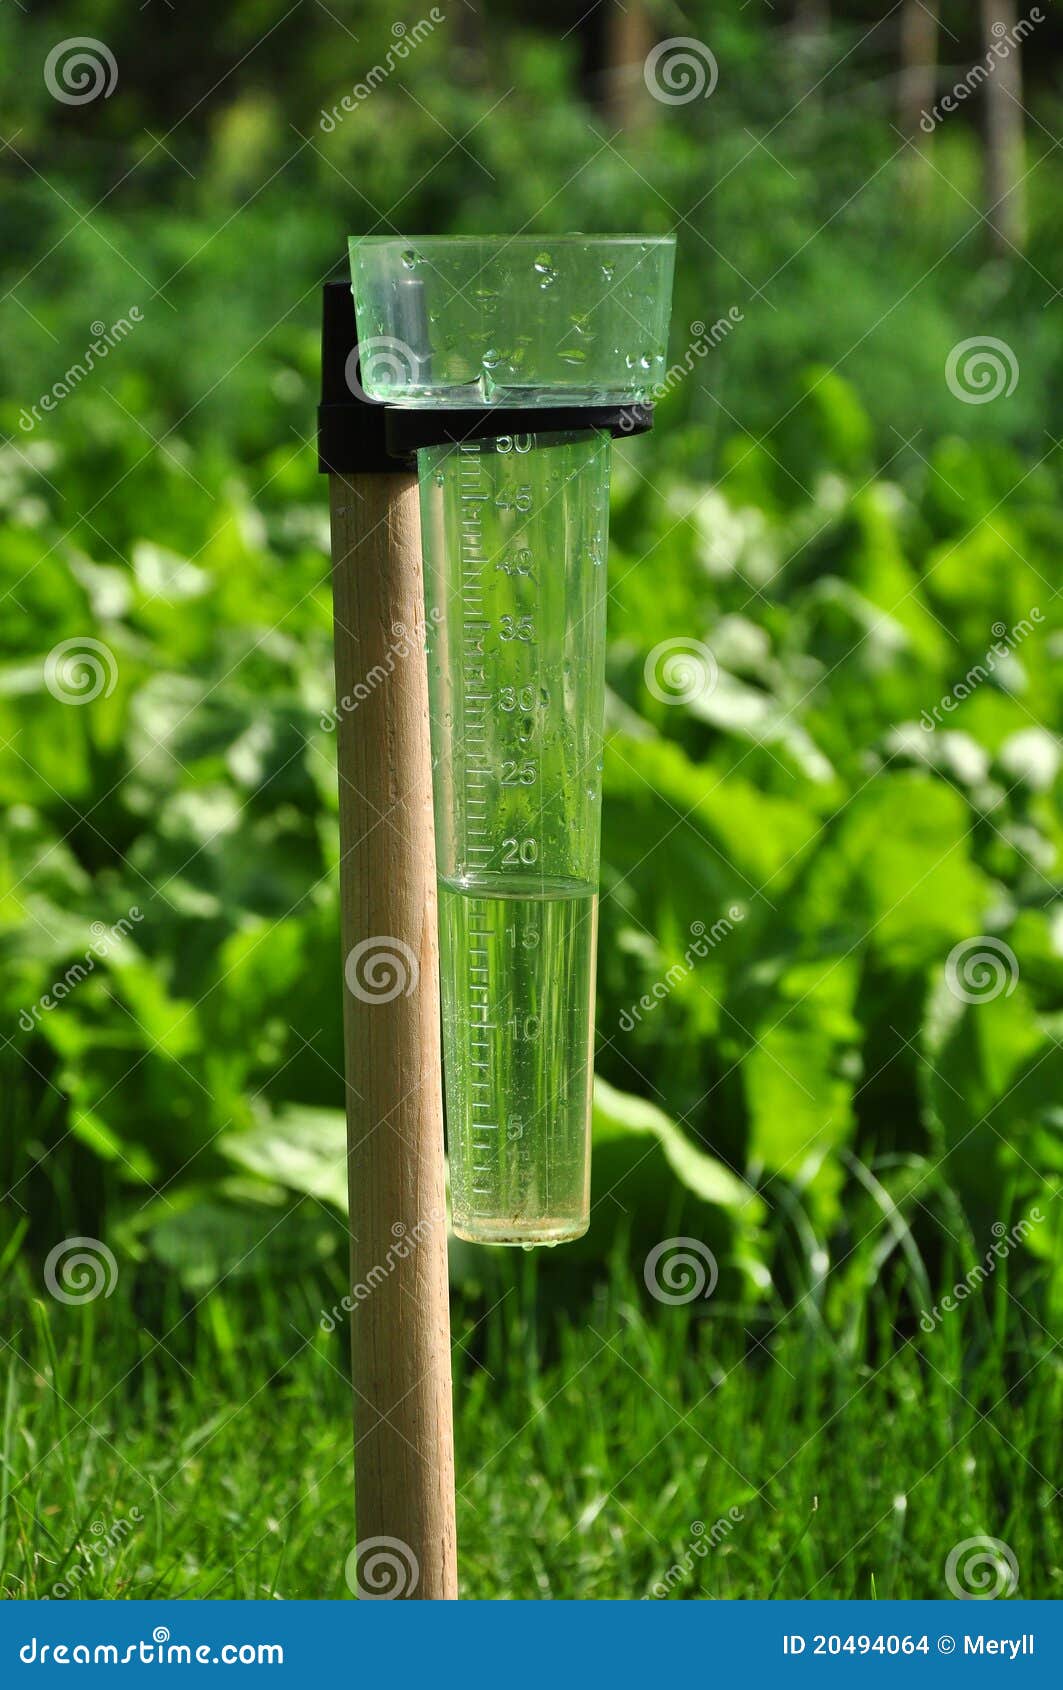 rainfall measurement